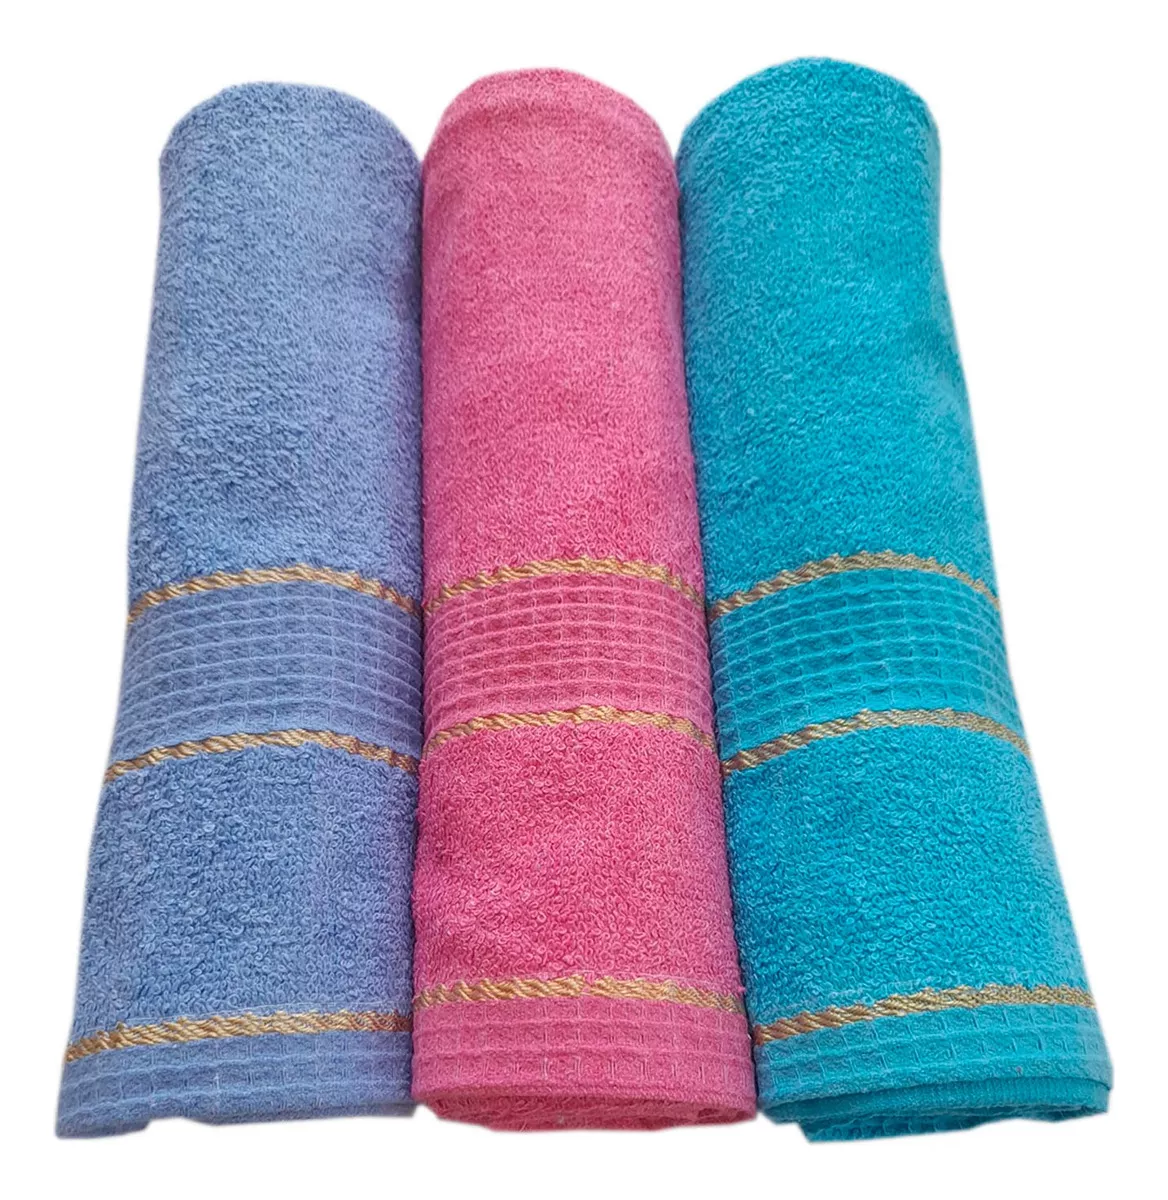 Tercera imagen para búsqueda de toallas baño